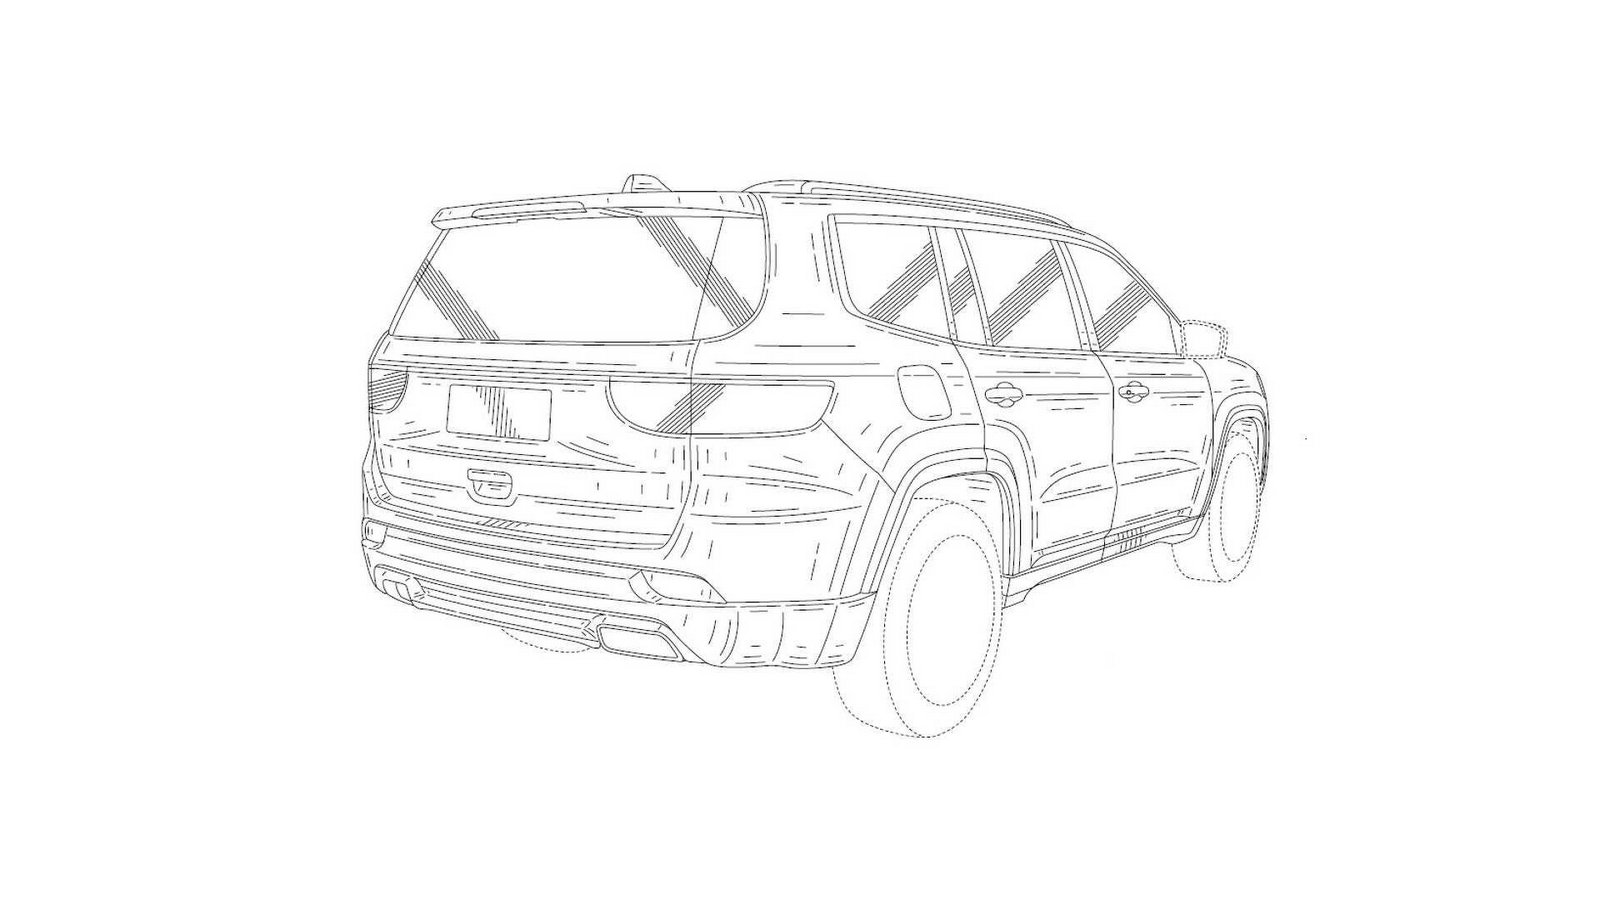 International, Jeep-Patent-Drawing-8: Paten Baru Jeep Beredar, Apakah Versi Produksi Jeep Yuntu?